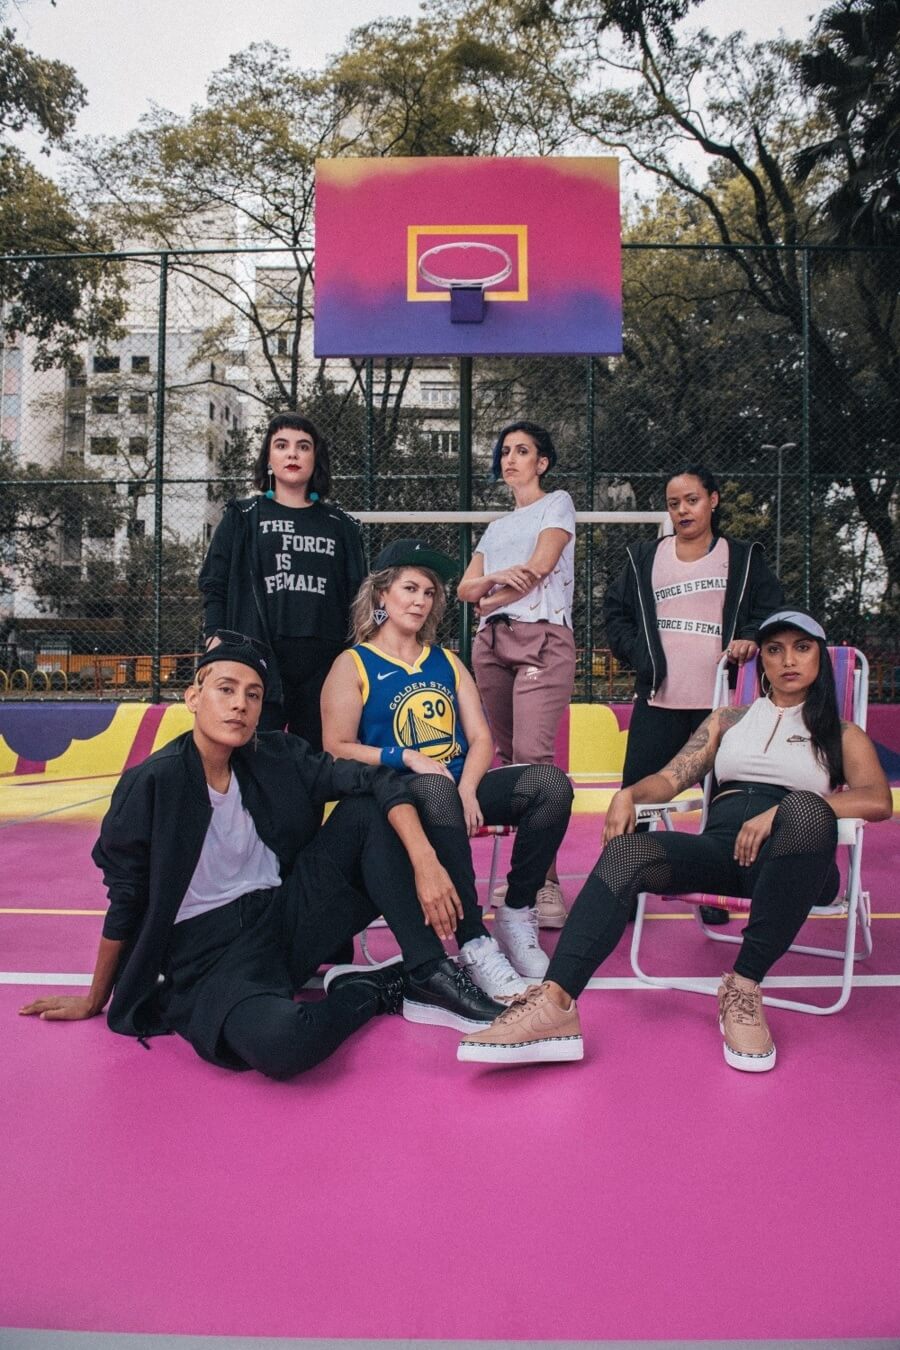 Mujeres y Nike al rescate del espacio público en São Paulo - ACC